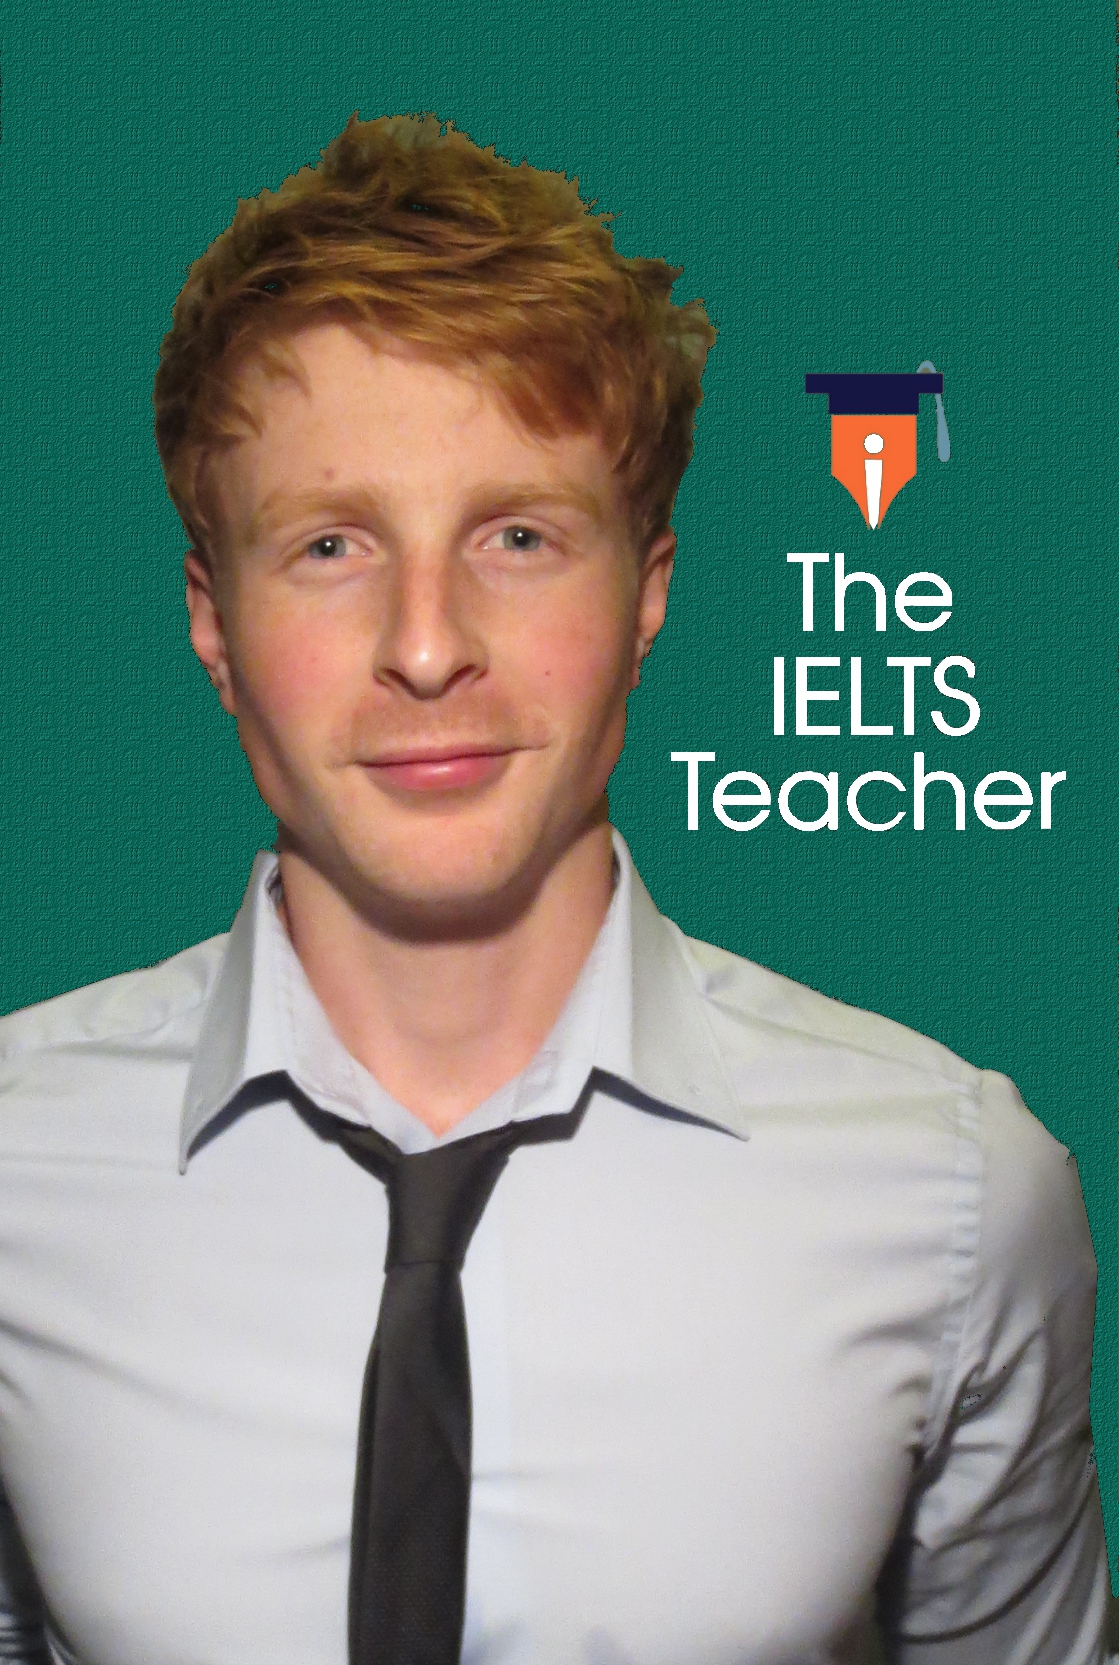 Matt Rainsbury - The IELTS Teacher